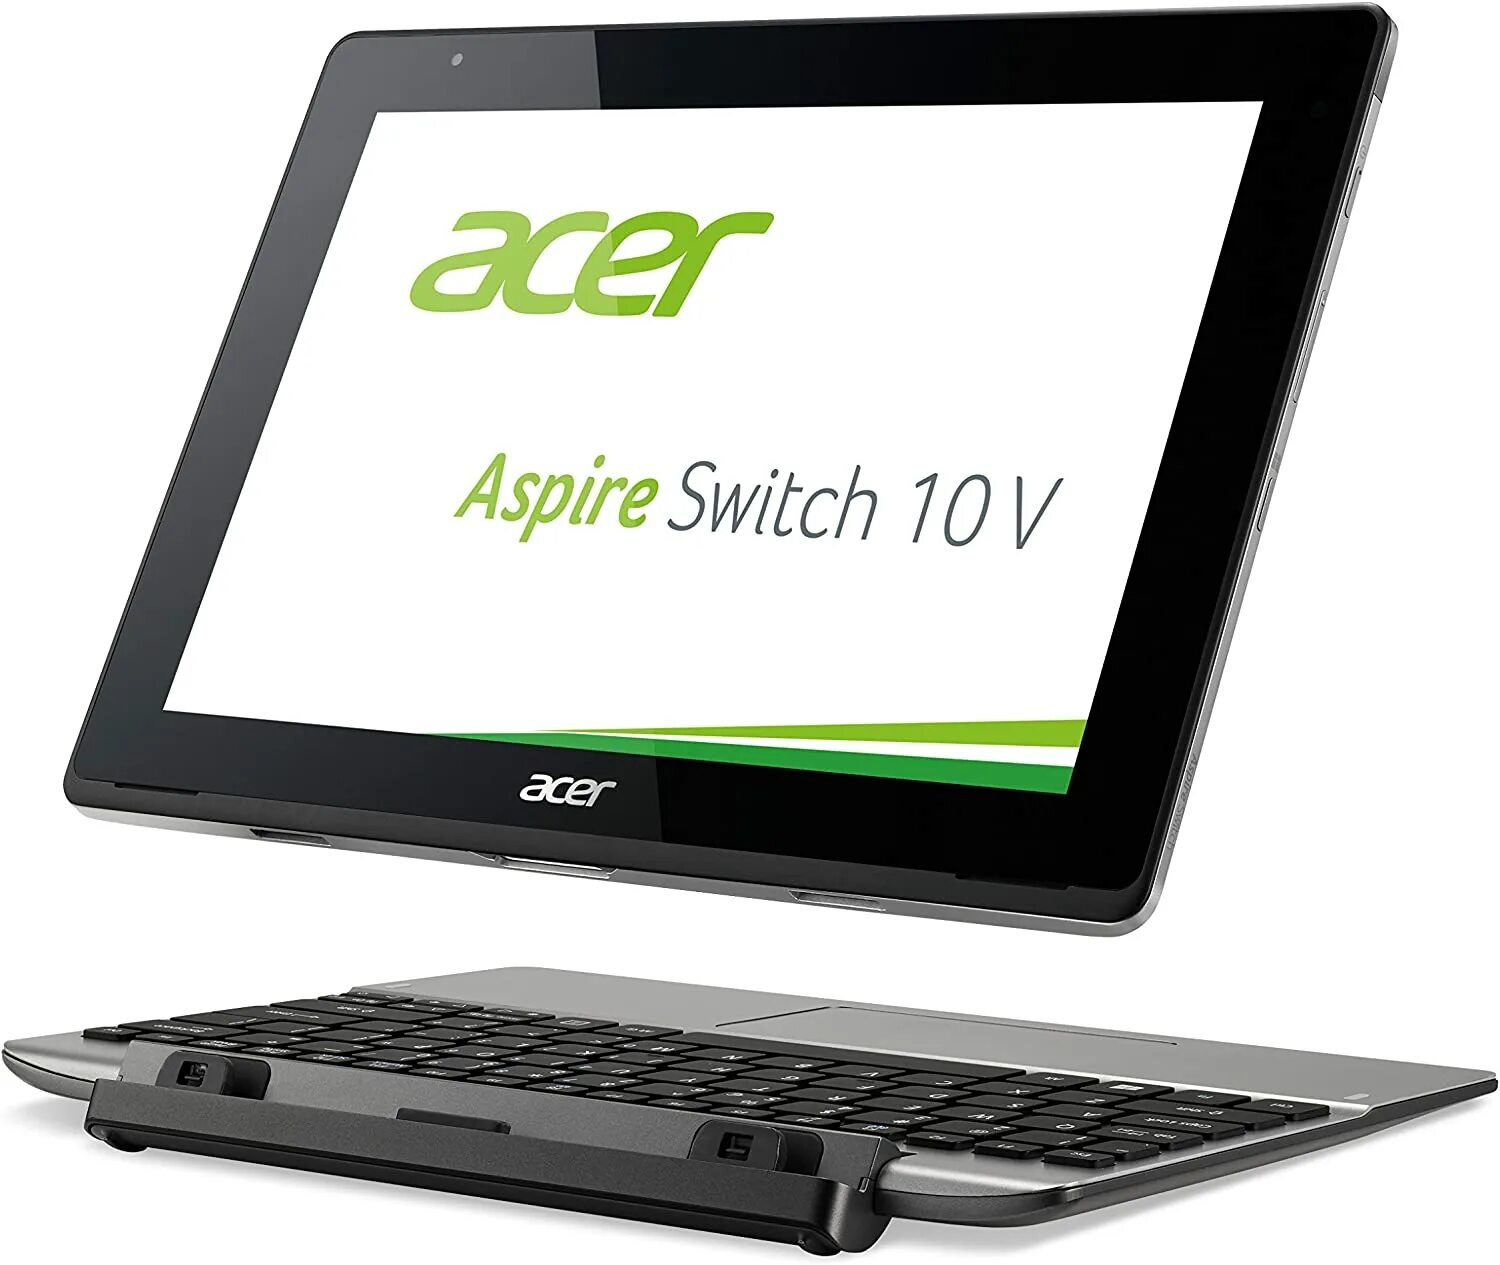 Acer Switch 10. Acer Aspire Switch 10. Acer Switch one 10. Acer Aspire Switch 10v. Асер aspire драйвера